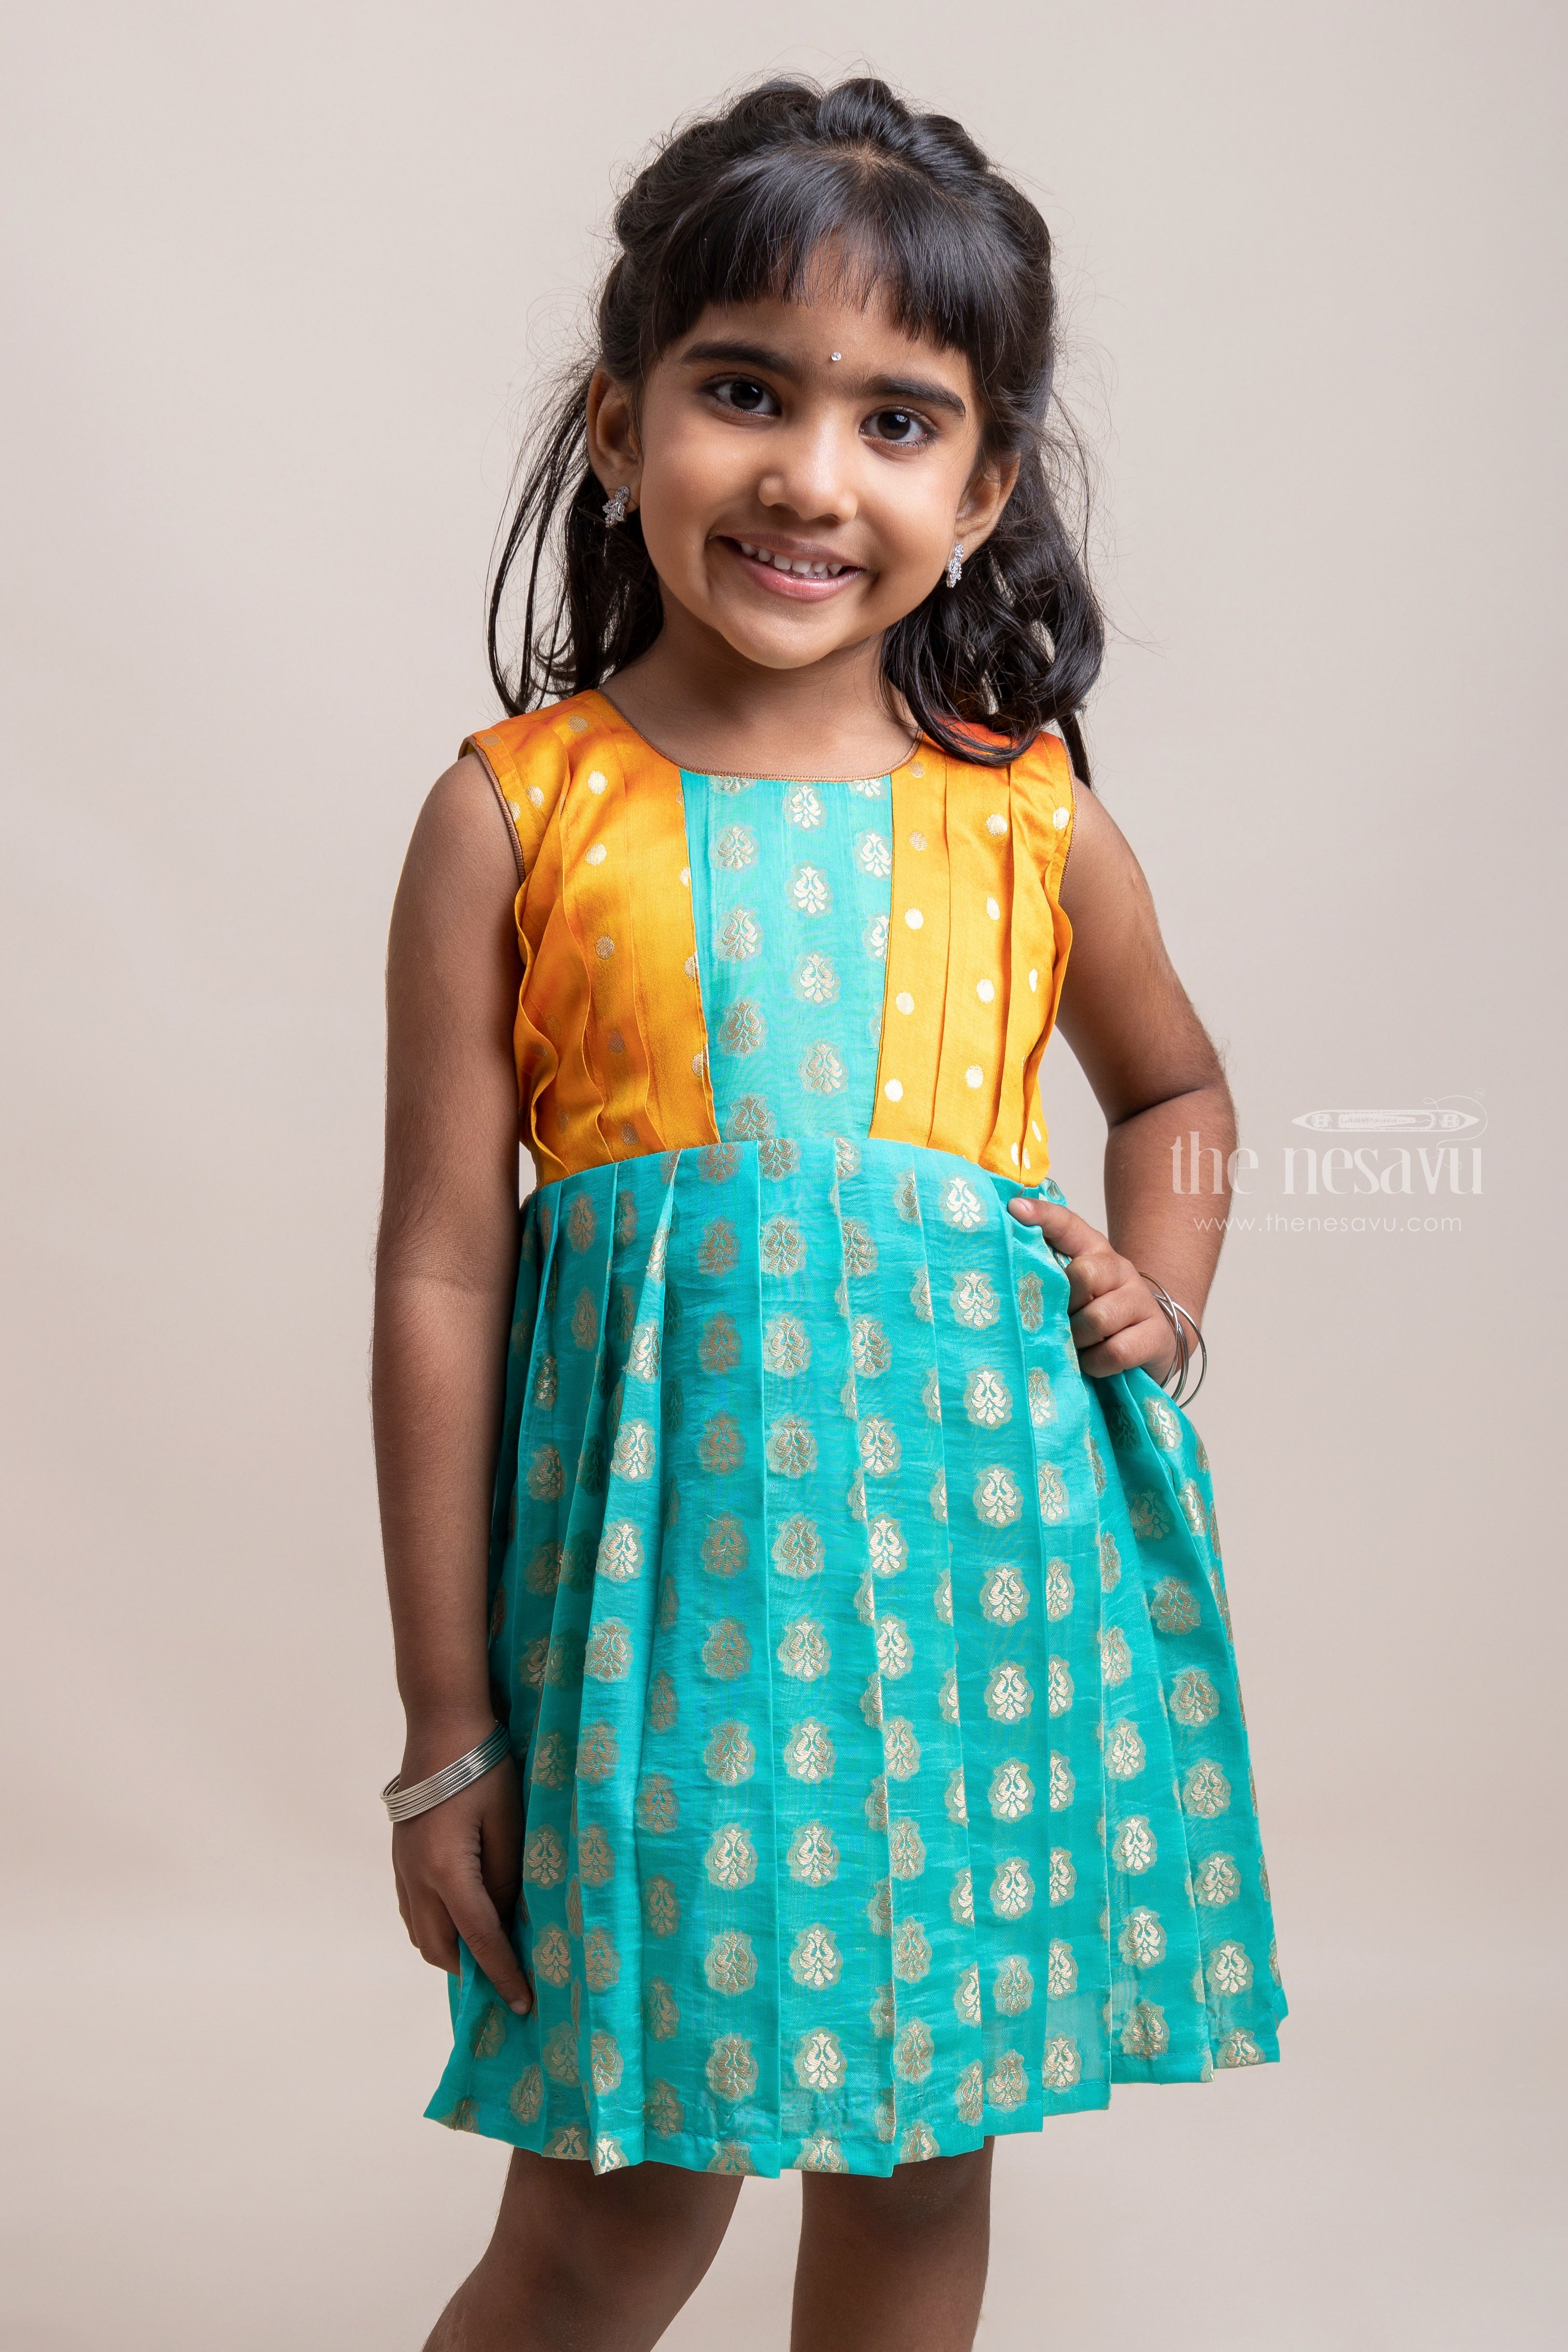 Buy Silk Gown For Kids Online  Teal Blue Pattu Dress Ideas  The Nesavu   The Nesavu